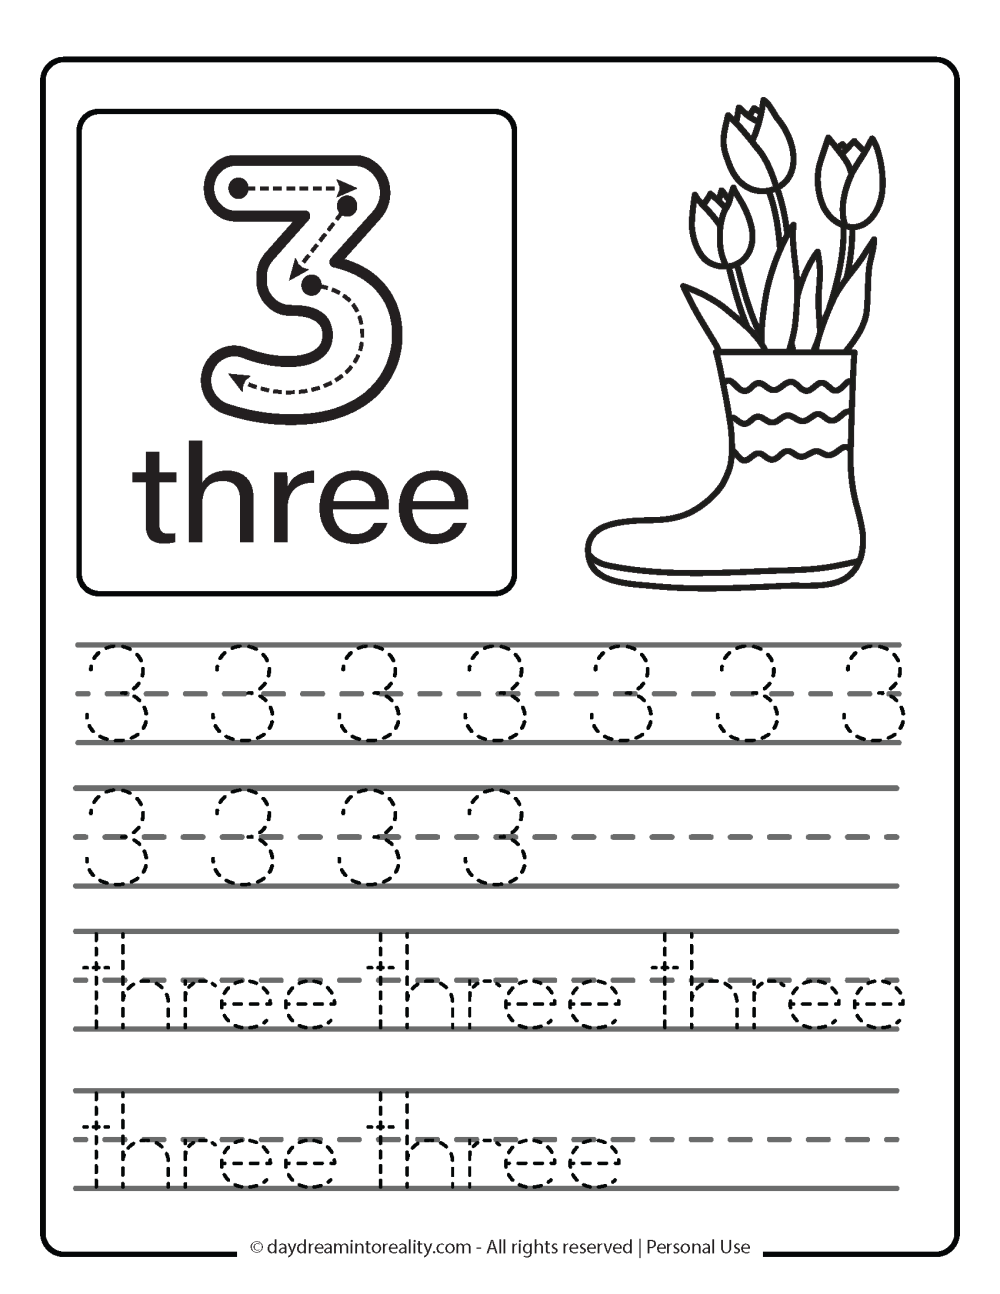 number 3 (numeric and word) worksheet free printable